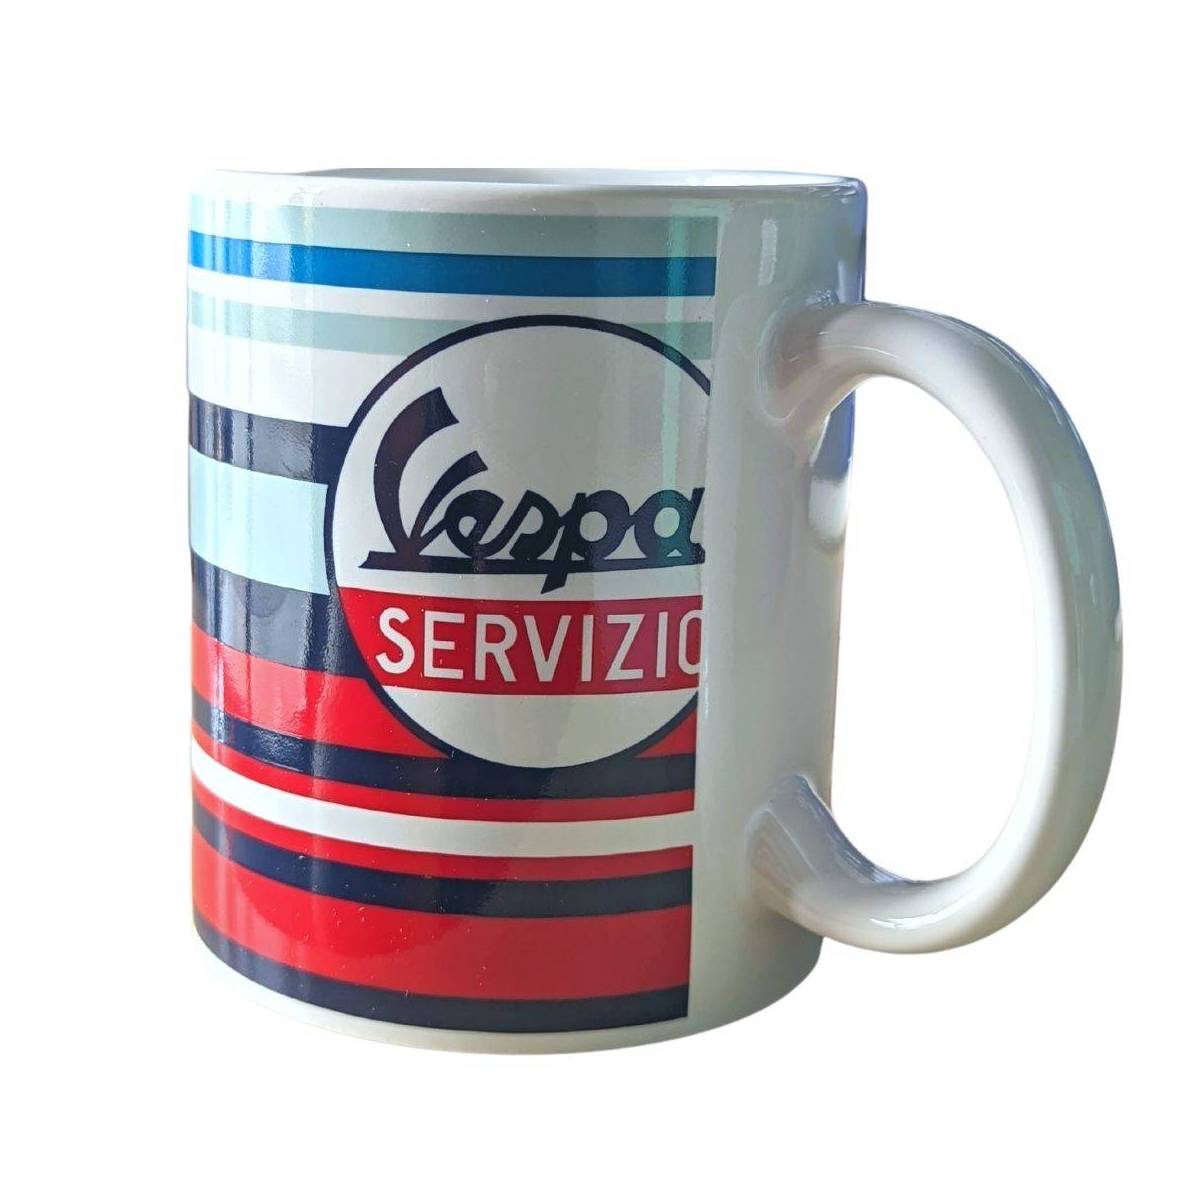 Becher Vespa Servizio Keramik 33 ml blau, rot, weiße Streifen